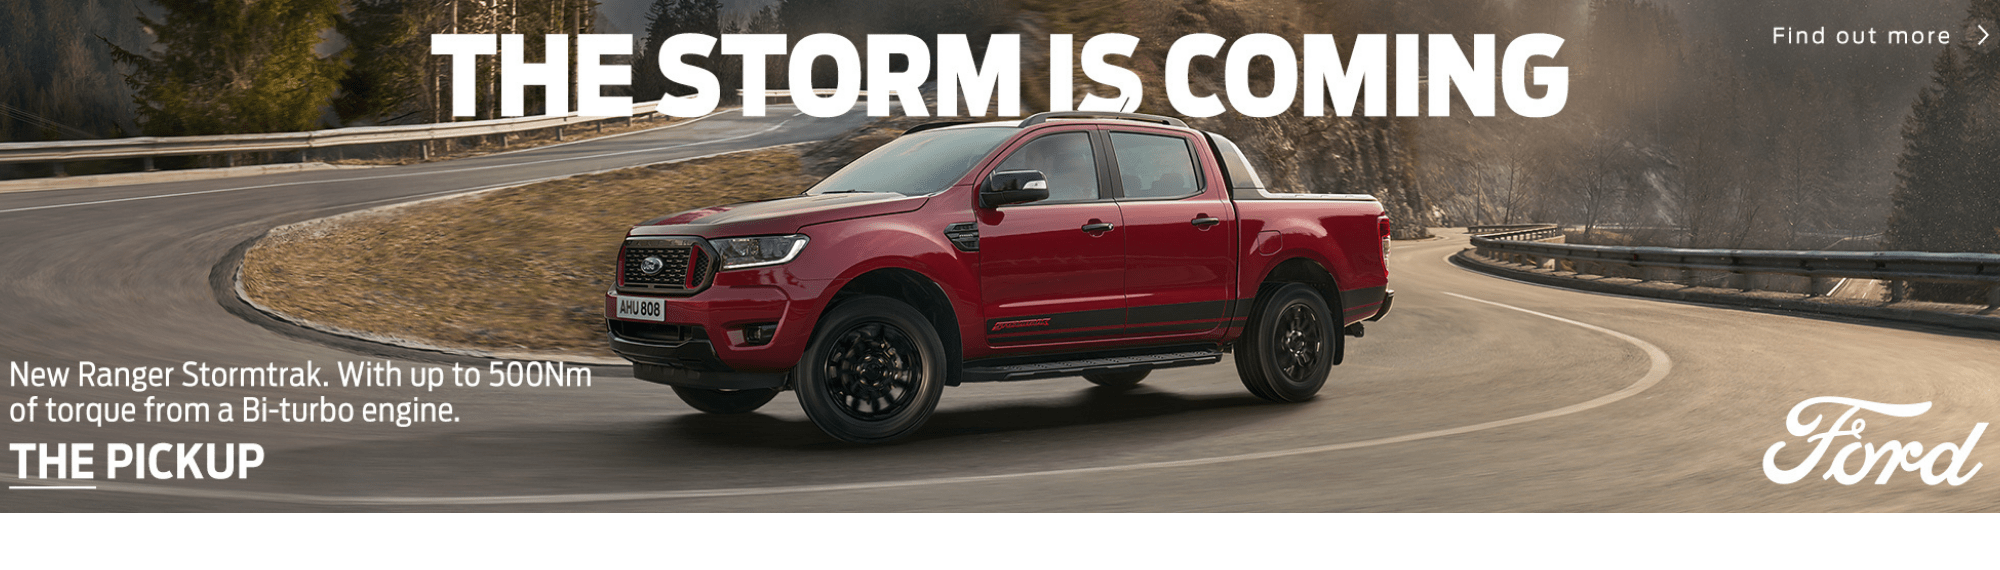 New Ford Ranger Stormtrak Image